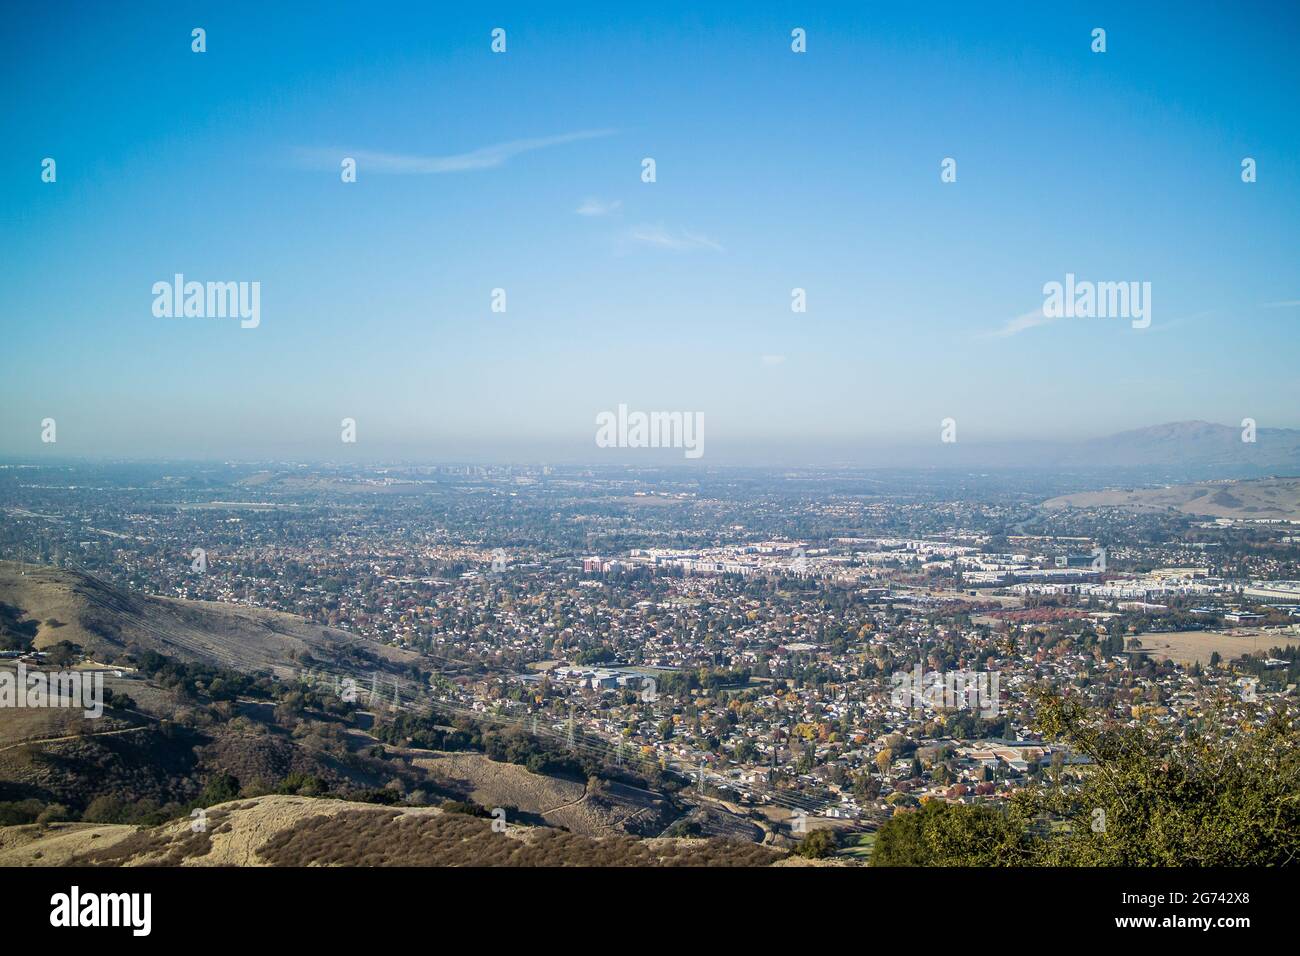 Vue sur la Silicon Valley depuis Coyote Peak, dans le parc Santa Teresa, en regardant vers le nord sur San Jose, Santa Clara et Sunnyvale jusqu'à la baie de San Francisco. Banque D'Images